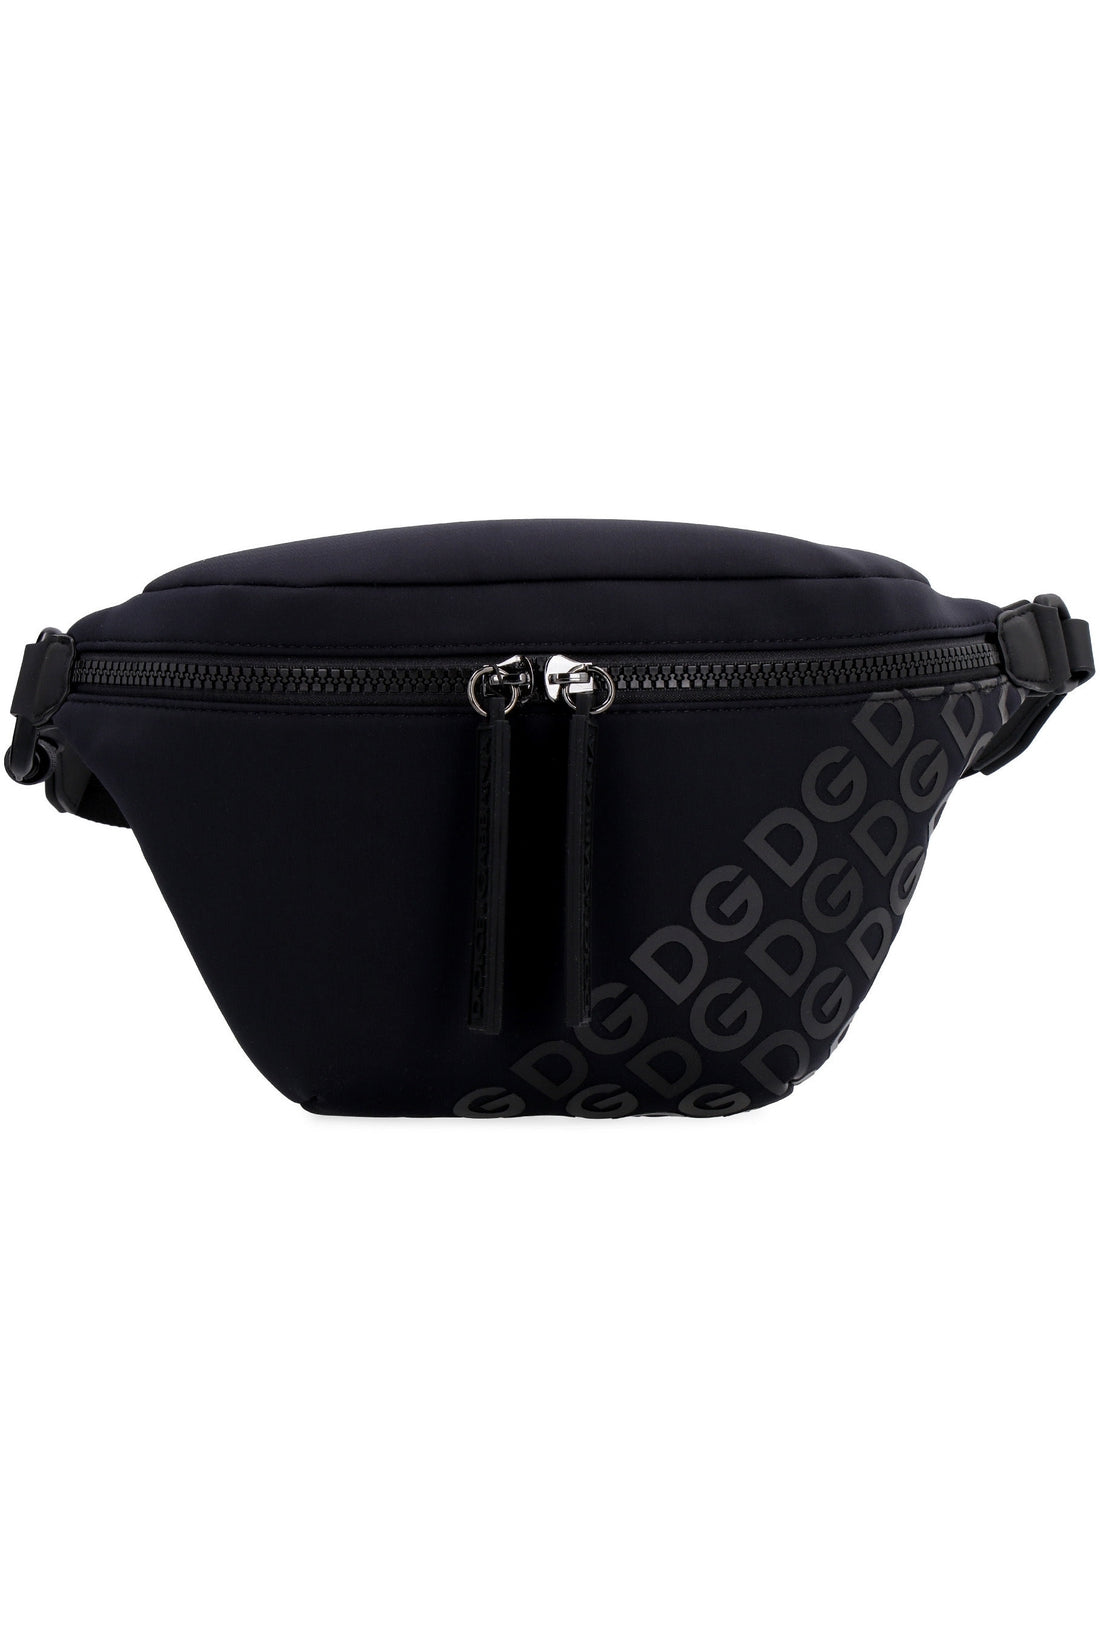 Dolce & Gabbana-OUTLET-SALE-Neoprene belt bag-ARCHIVIST